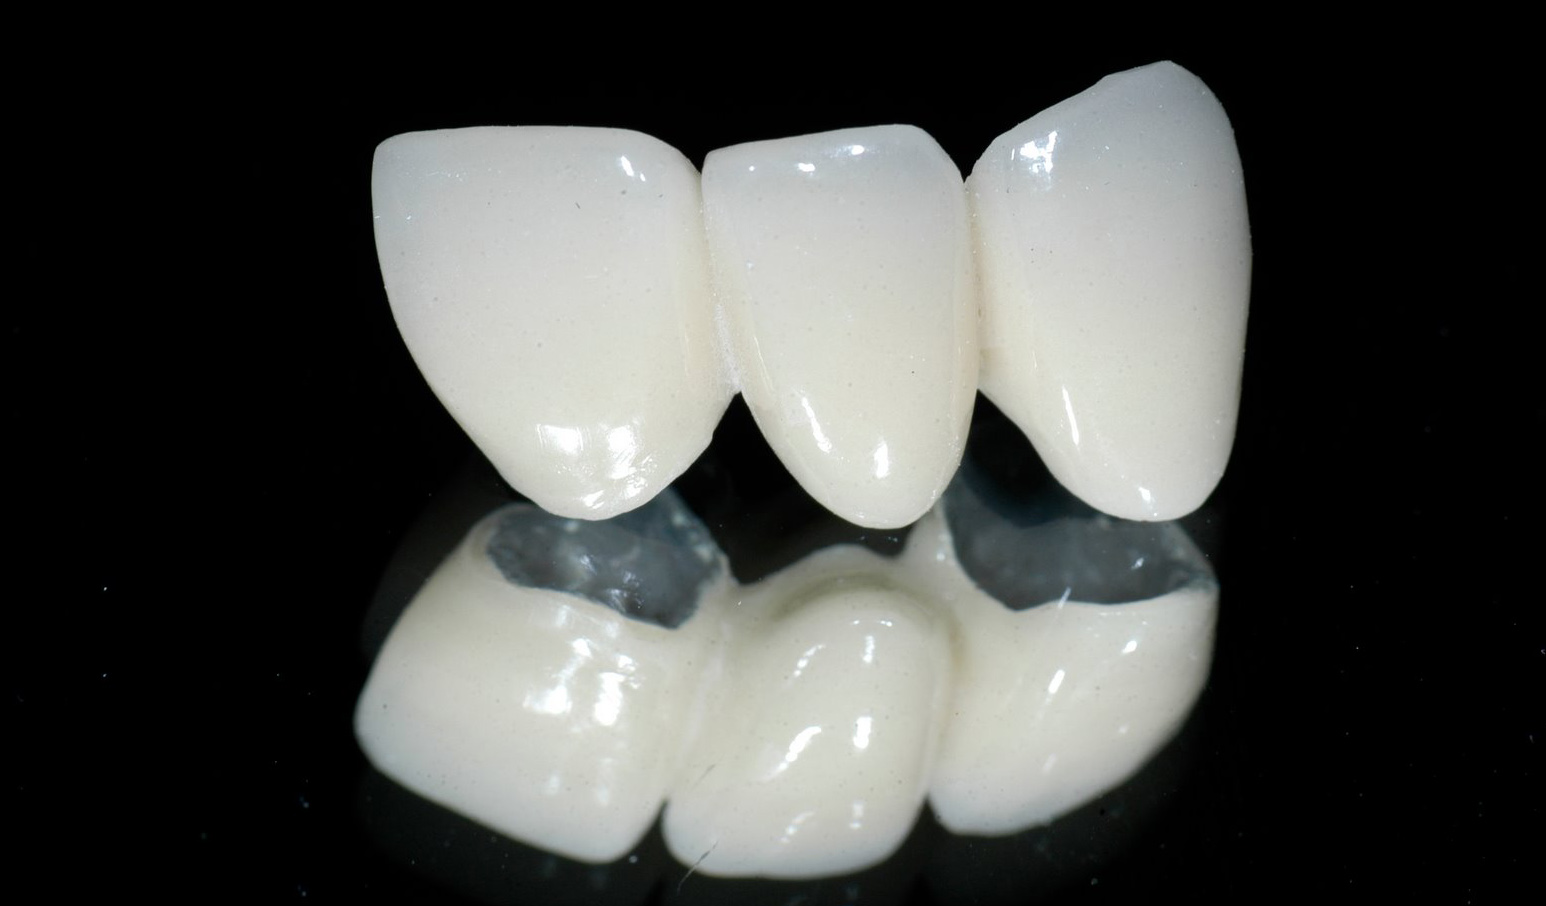 Những đặc điểm của răng sứ toàn sứ